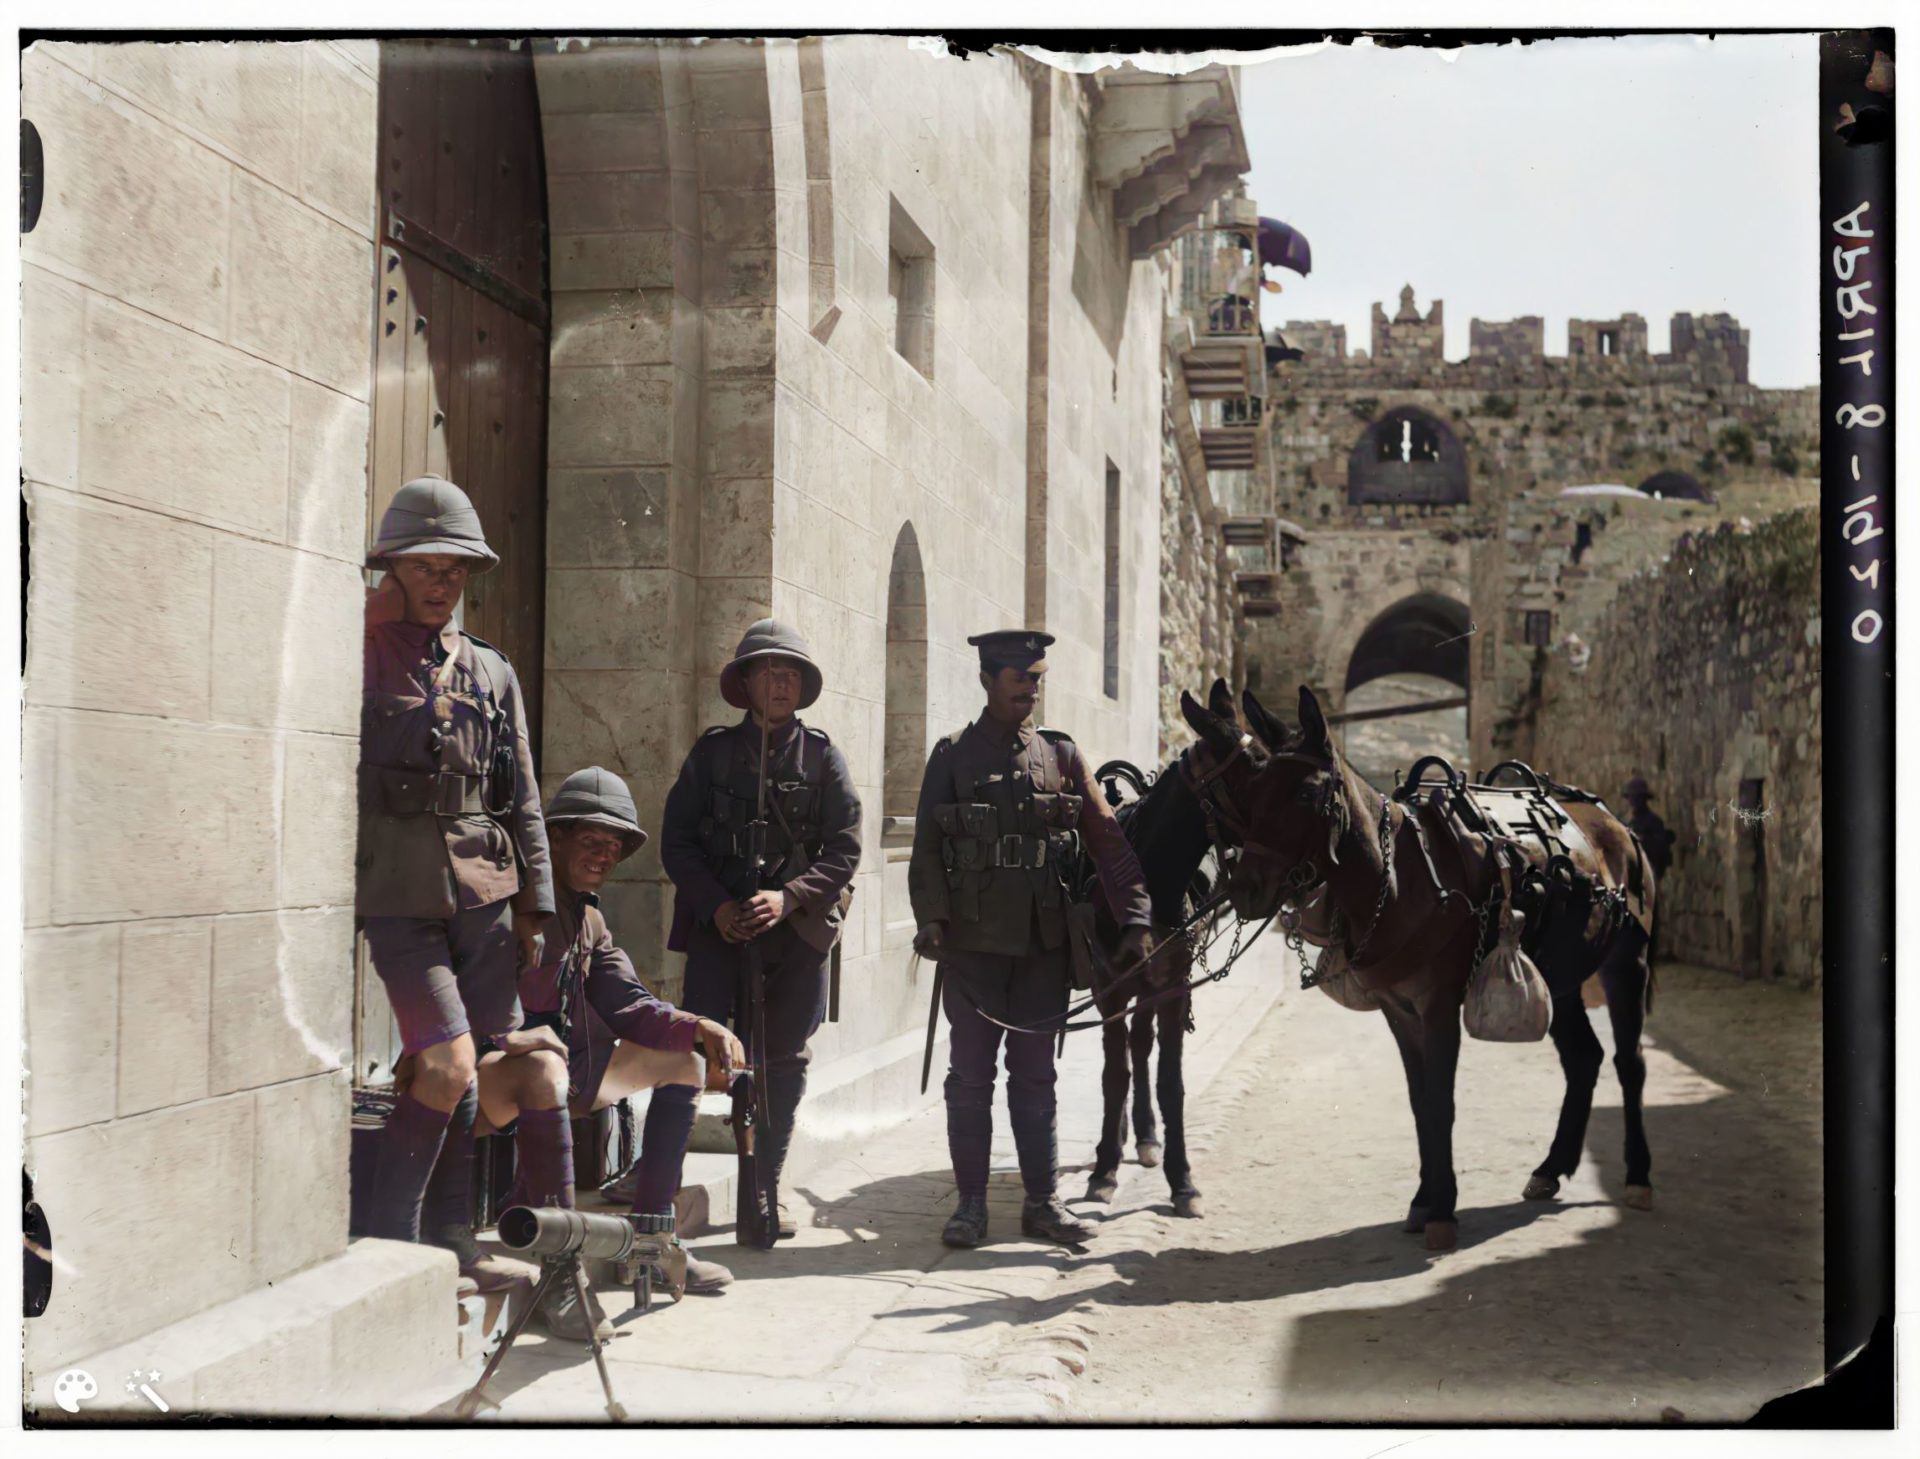 חיילים בריטים חמושים ברובי לואיס בכניסה לשער האריות, 8 באפריל 1920.מספר תמונה: LC-DIG-matpc-00747